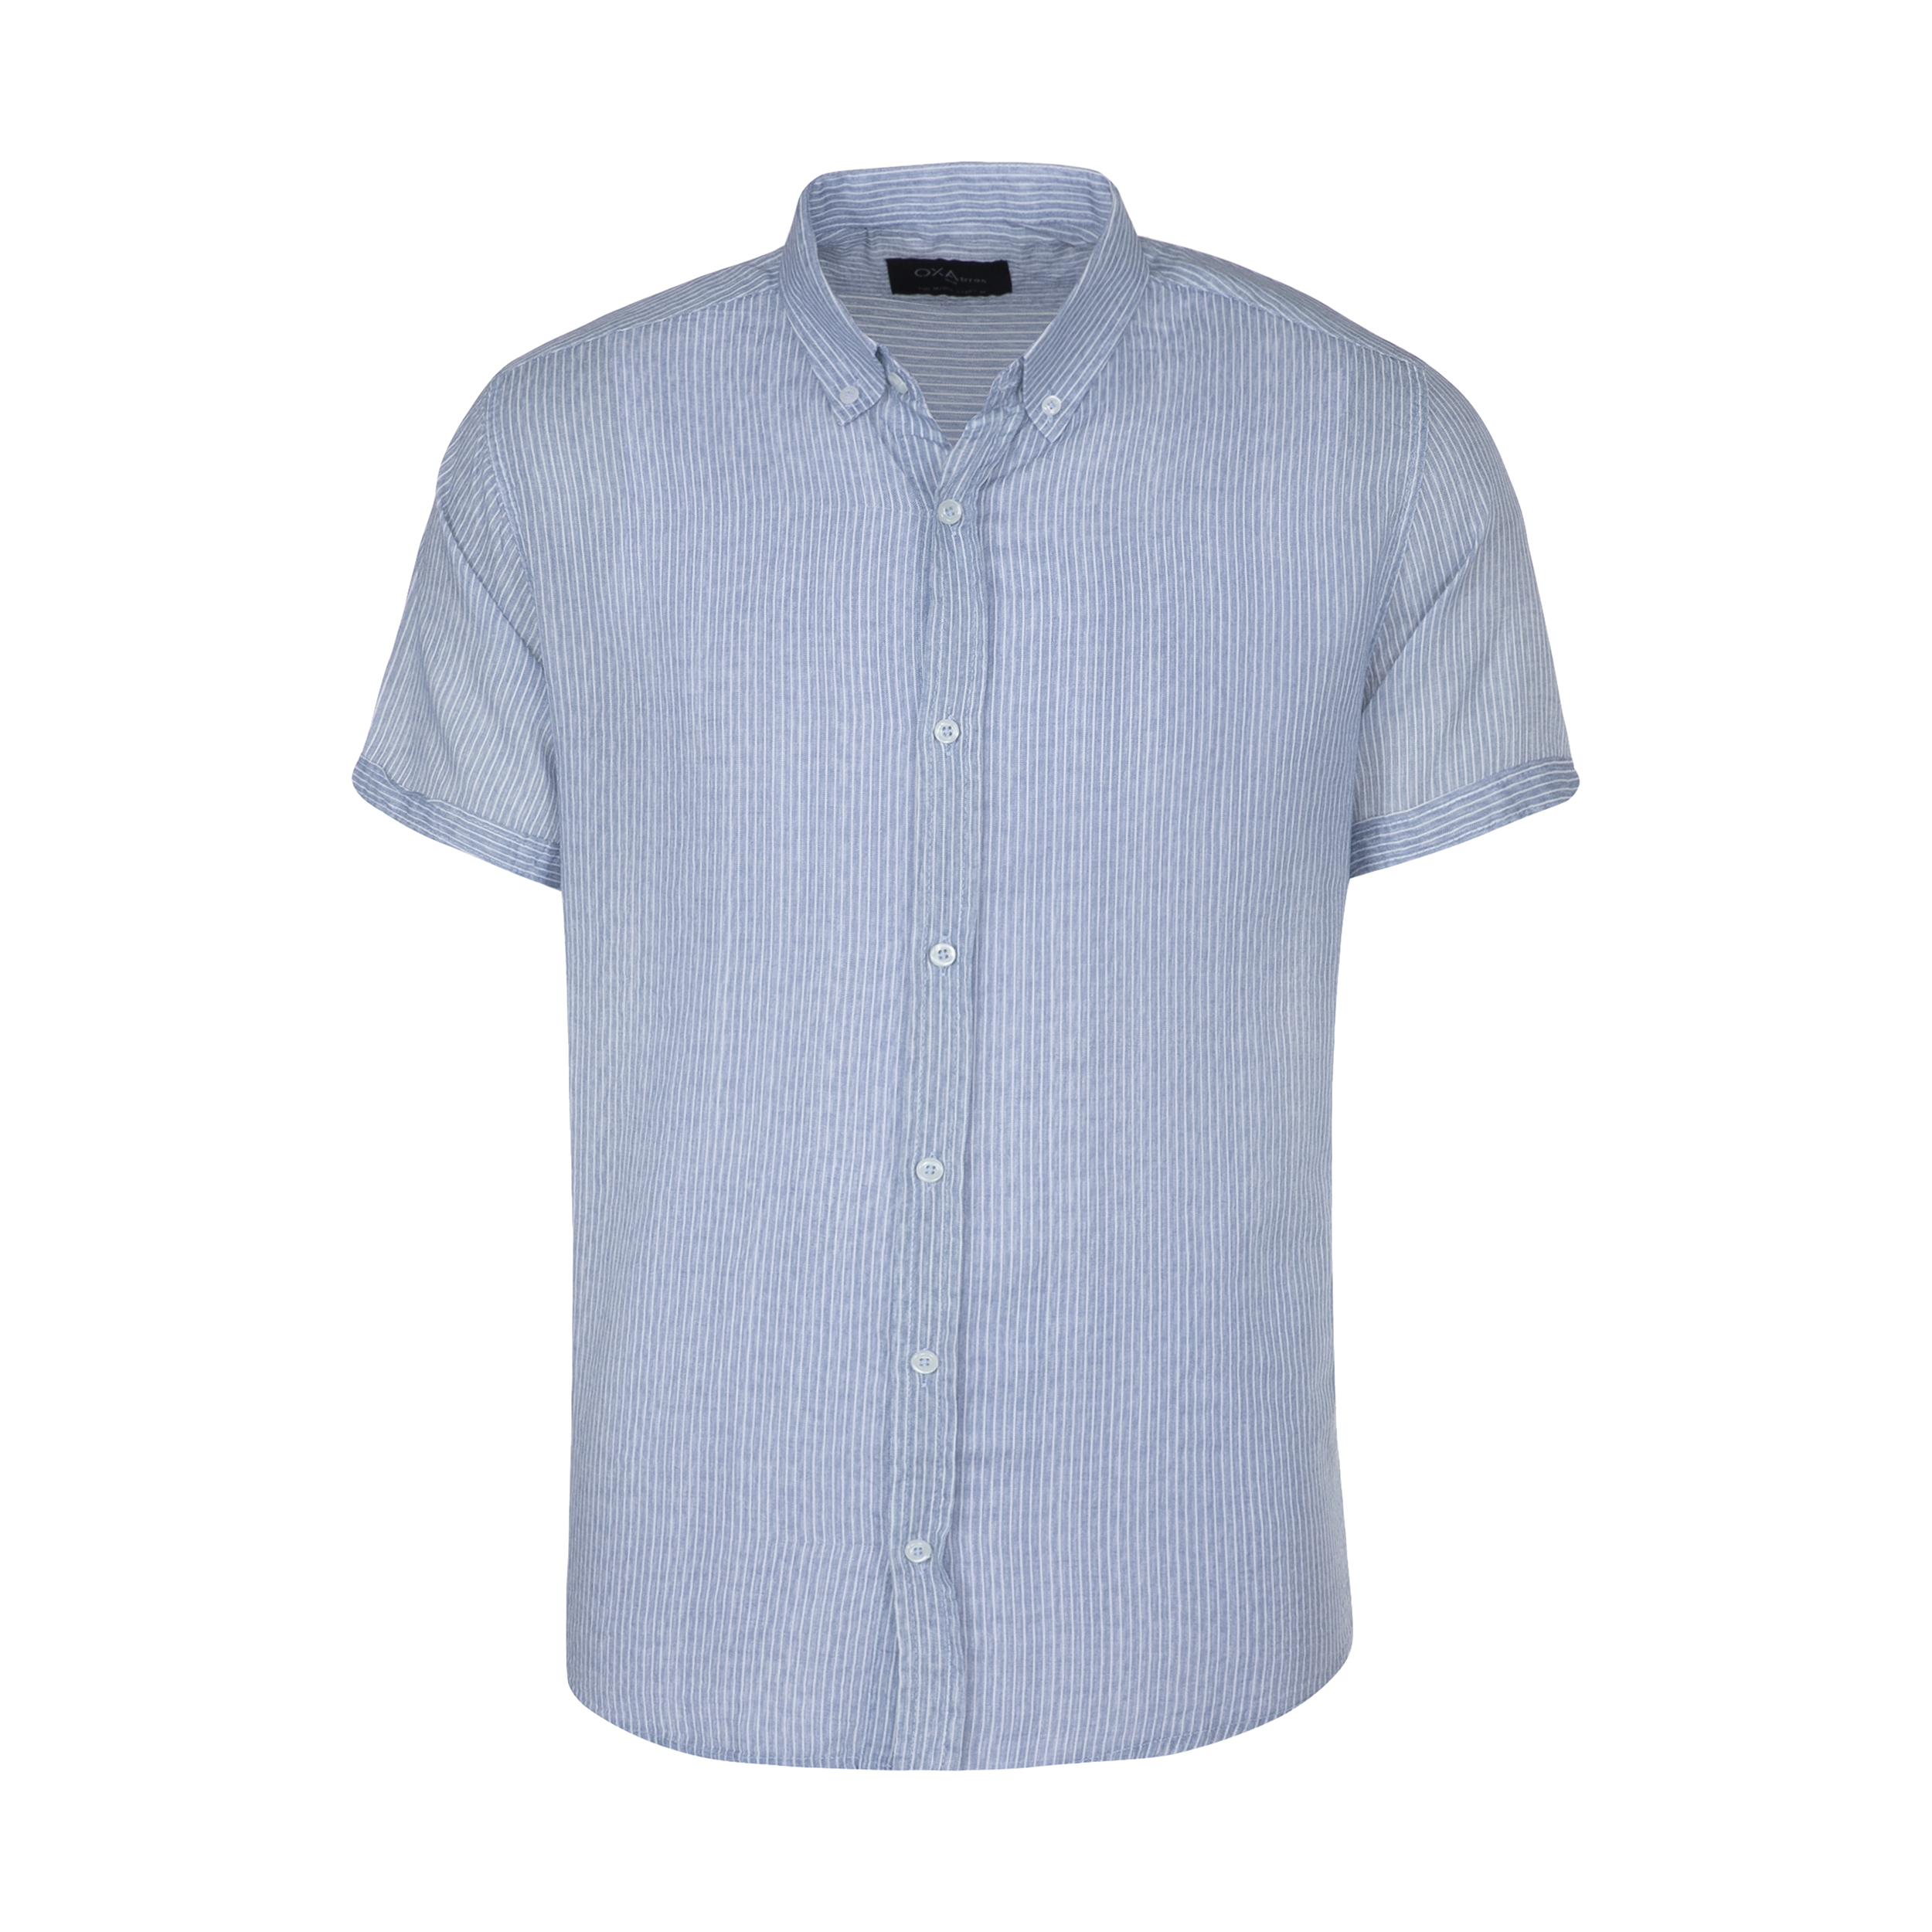 پیراهن مردانه اکزاترس مدل P012002150360005-150